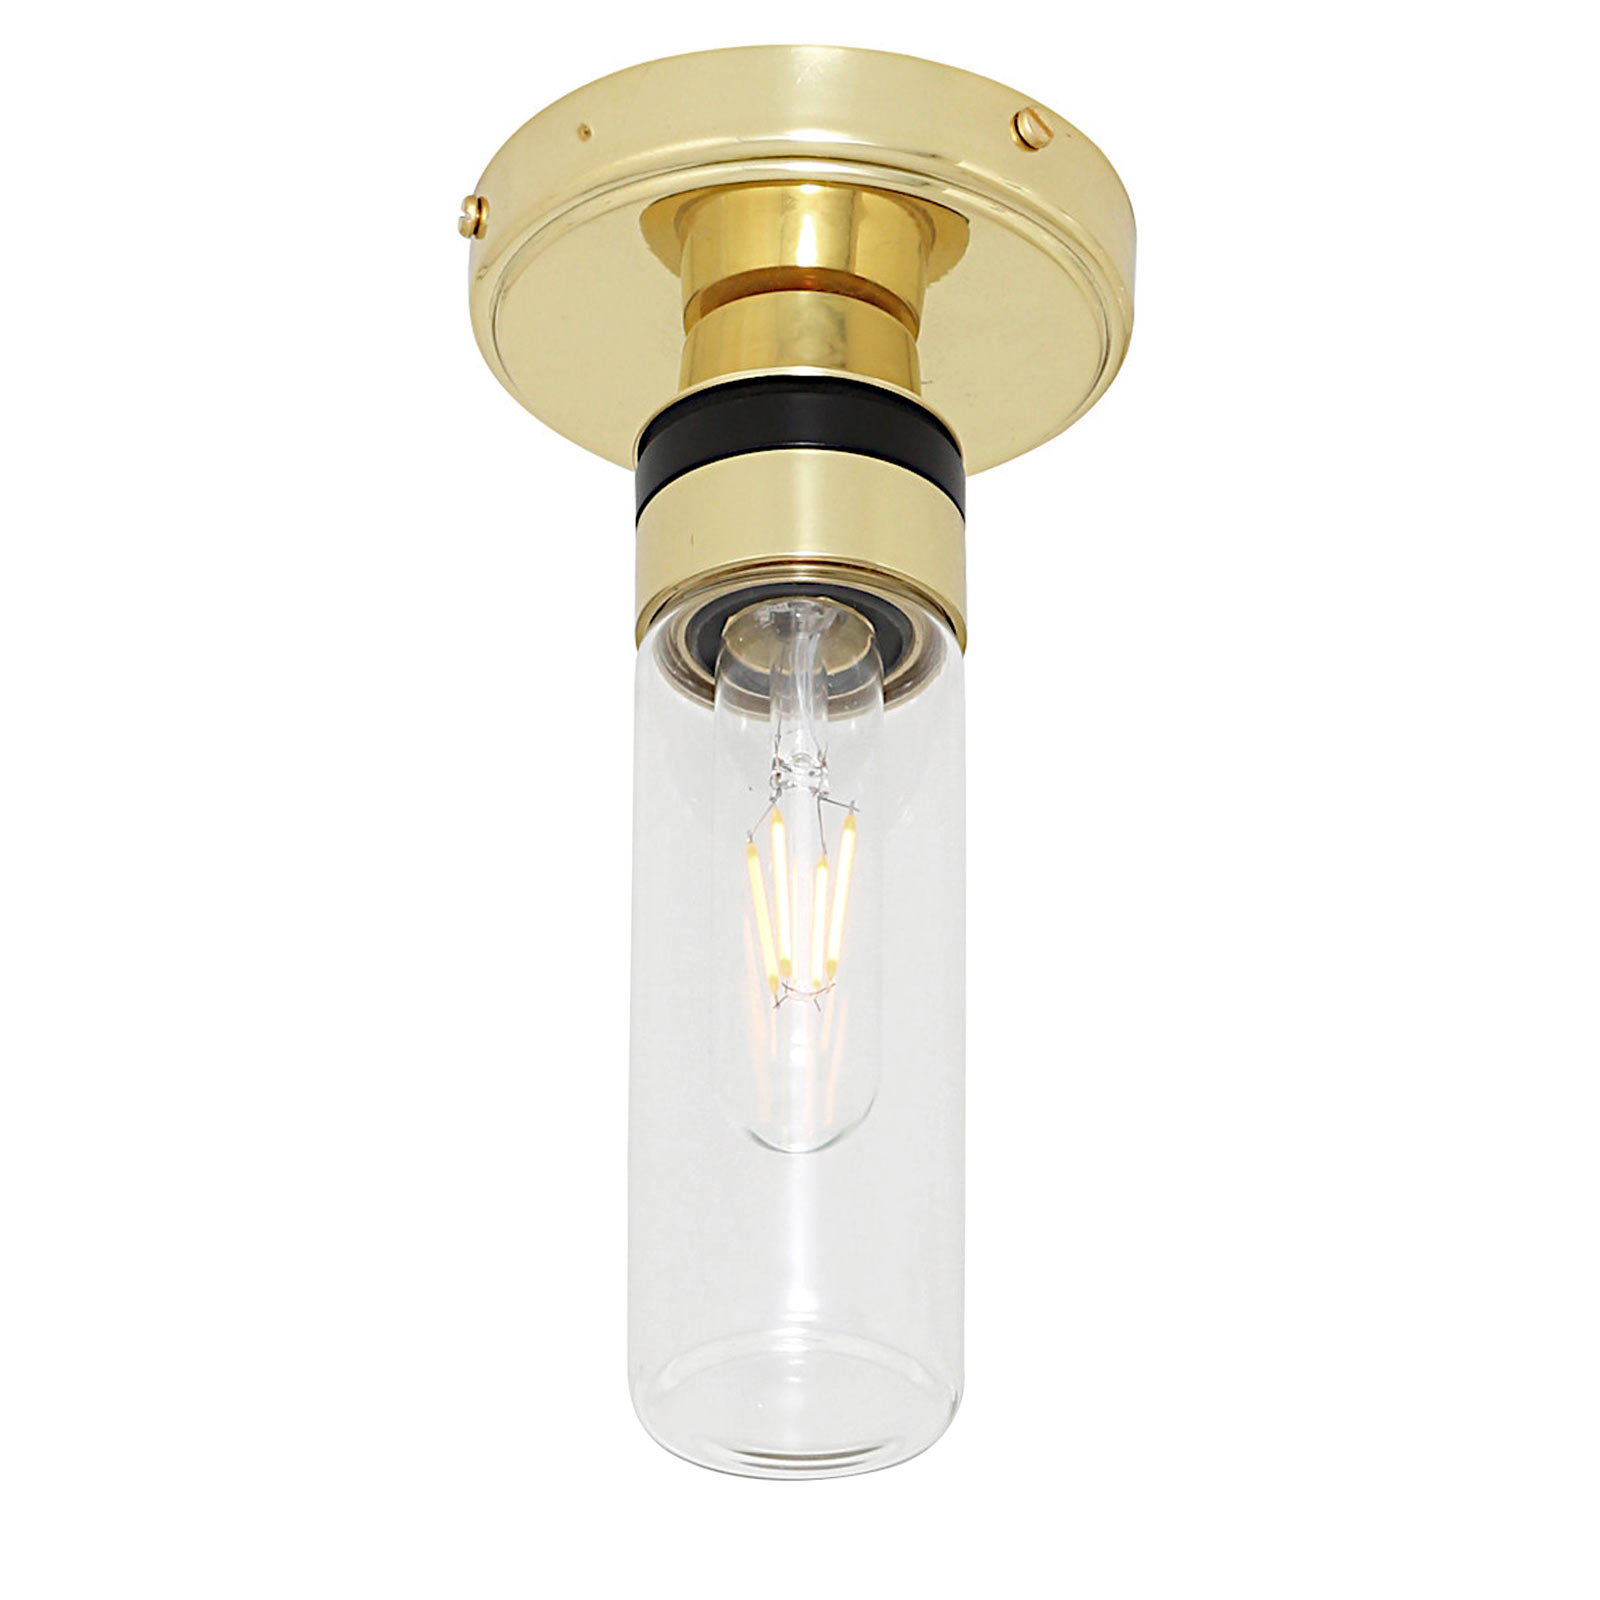 Bad-Deckenlampe mit kleinem Glas-Zylinder (klar oder prismatisch), IP65: Deckenleuchte, hier mit klarem (glatten) Glastubus